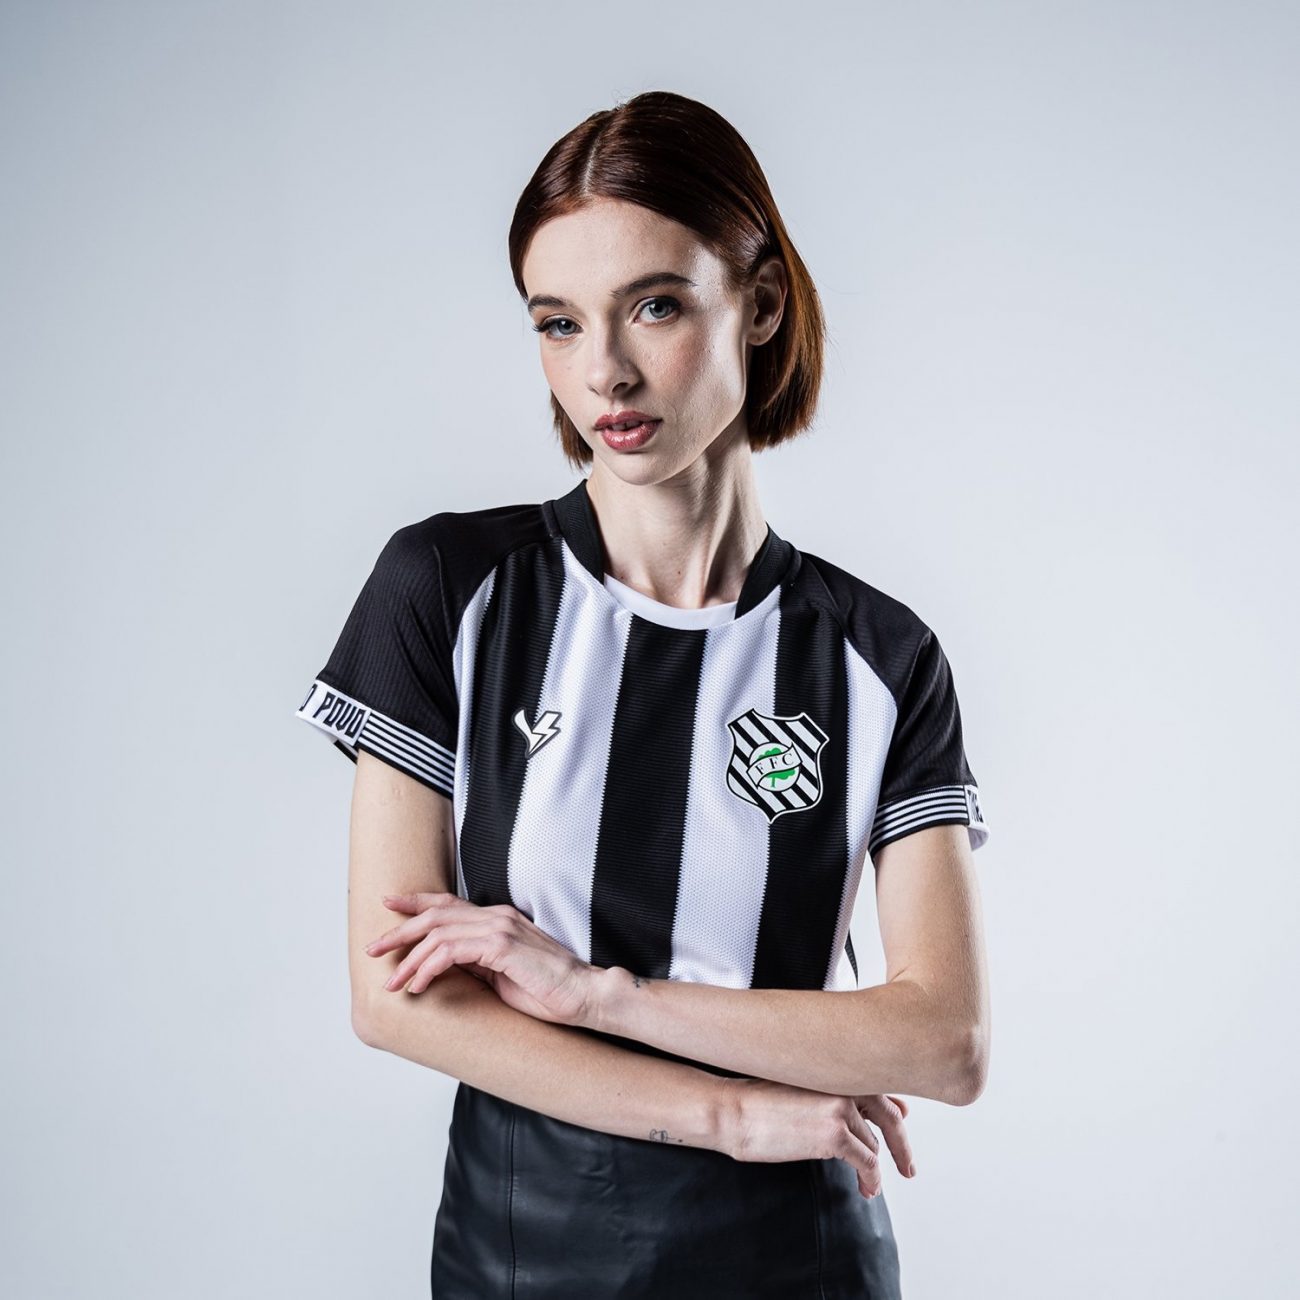 Modelo feminino da nova camisa do Figueirense - Figueirense/Divulgação/ND